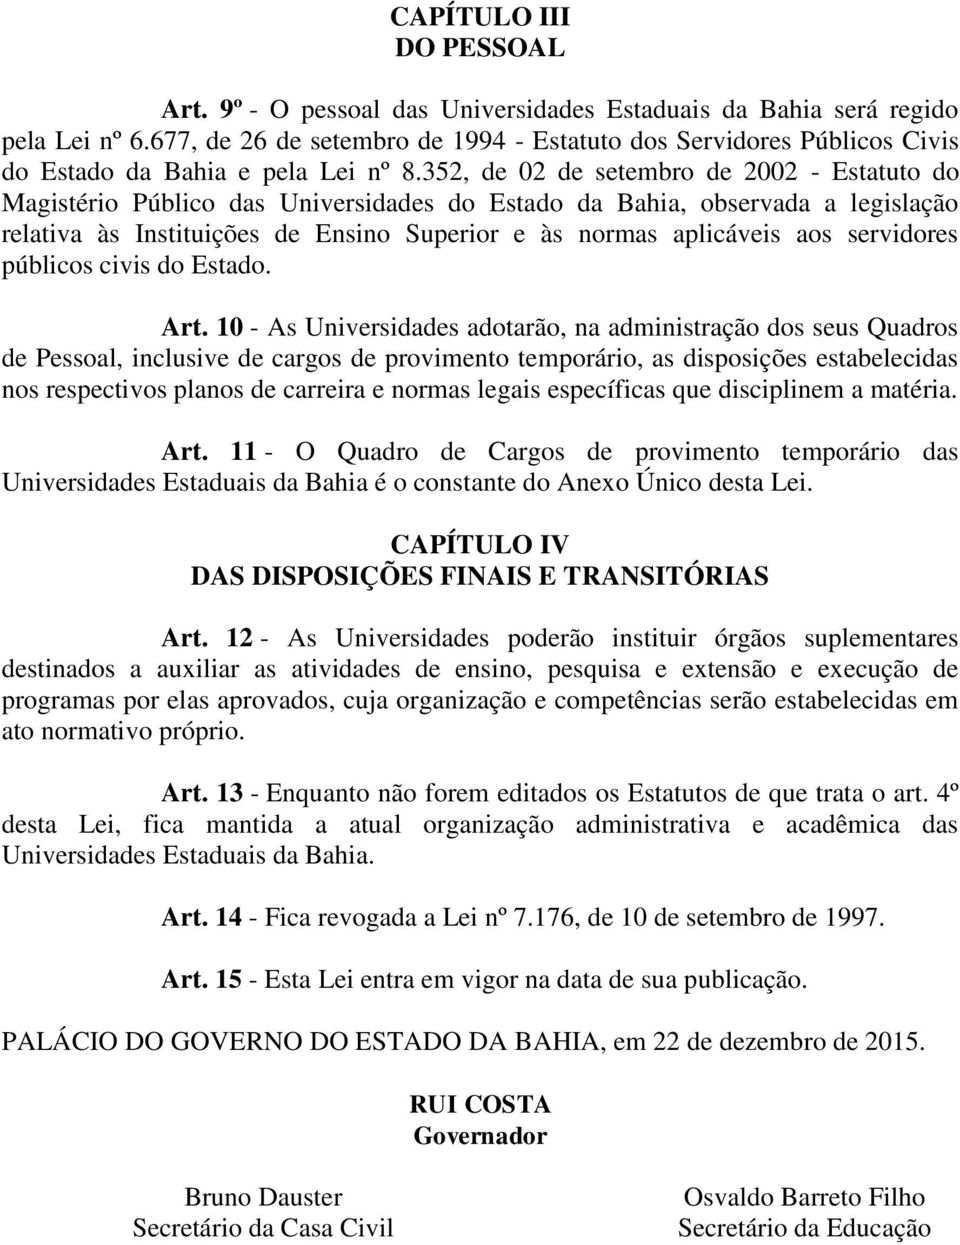 352, de 02 de setembro de 2002 - Estatuto do Magistério Público das Universidades do Estado da Bahia, observada a legislação relativa às Instituições de Ensino Superior e às normas aplicáveis aos